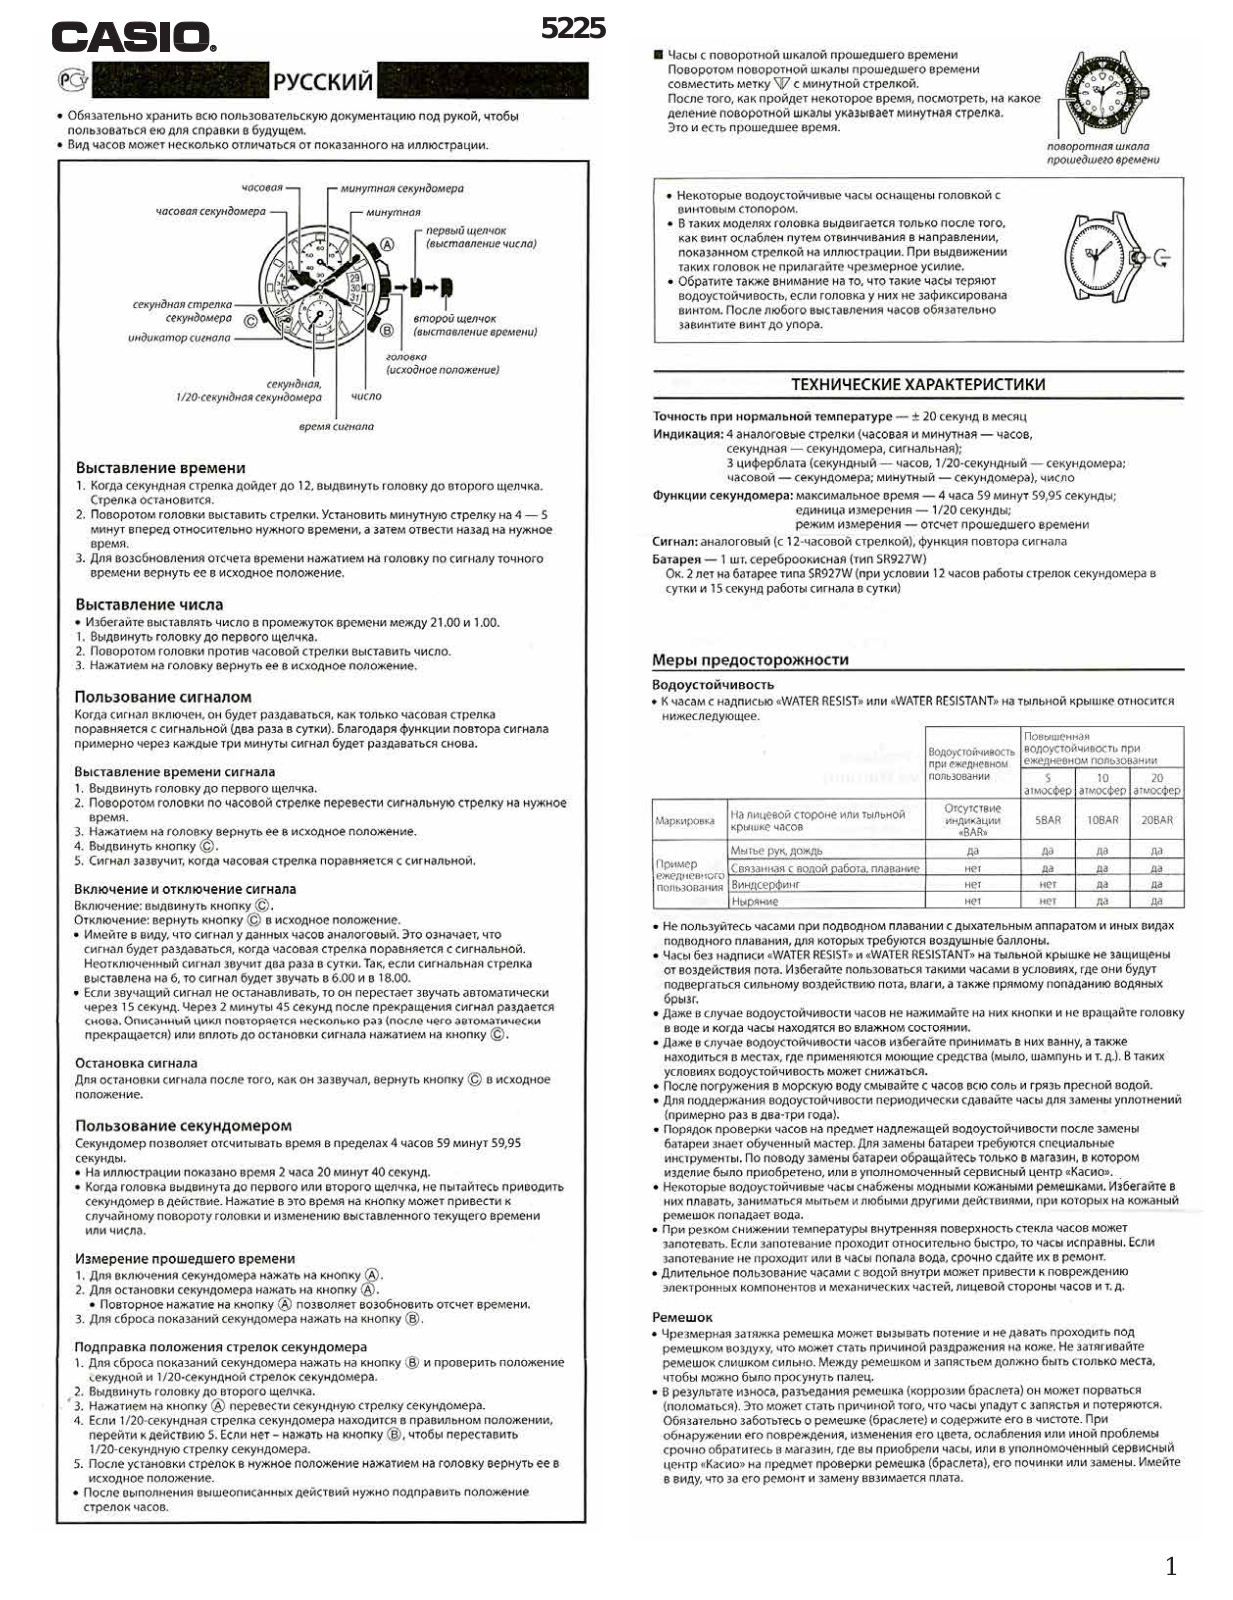 CASIO EFR-501 User Manual